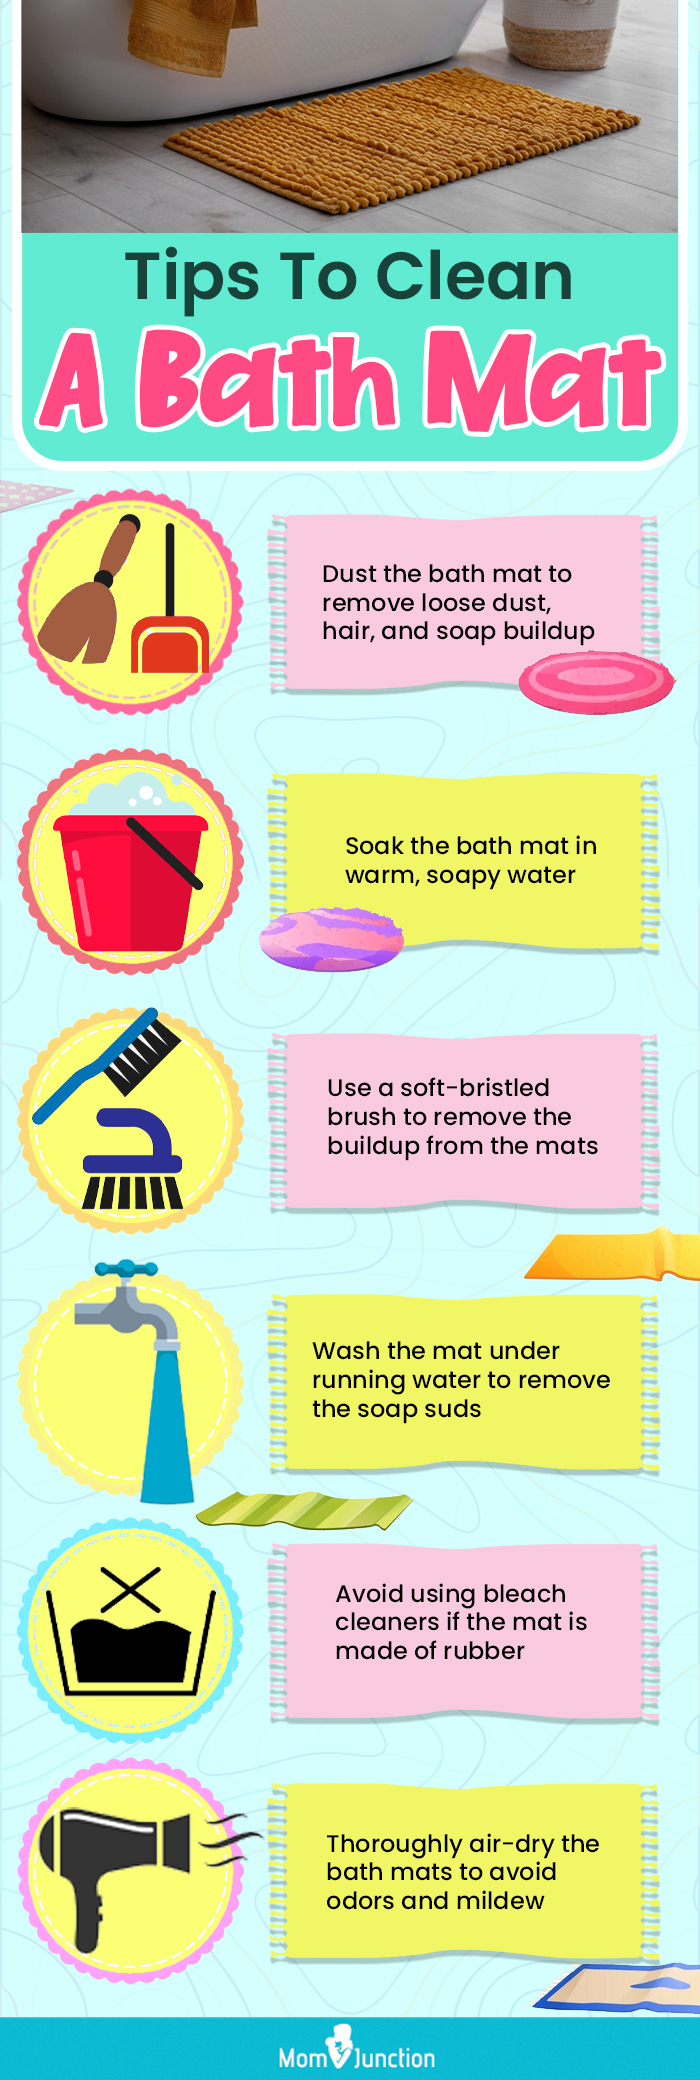 https://cdn2.momjunction.com/wp-content/uploads/2023/02/Tips-To-Clean-A-Bath-Mat.jpg